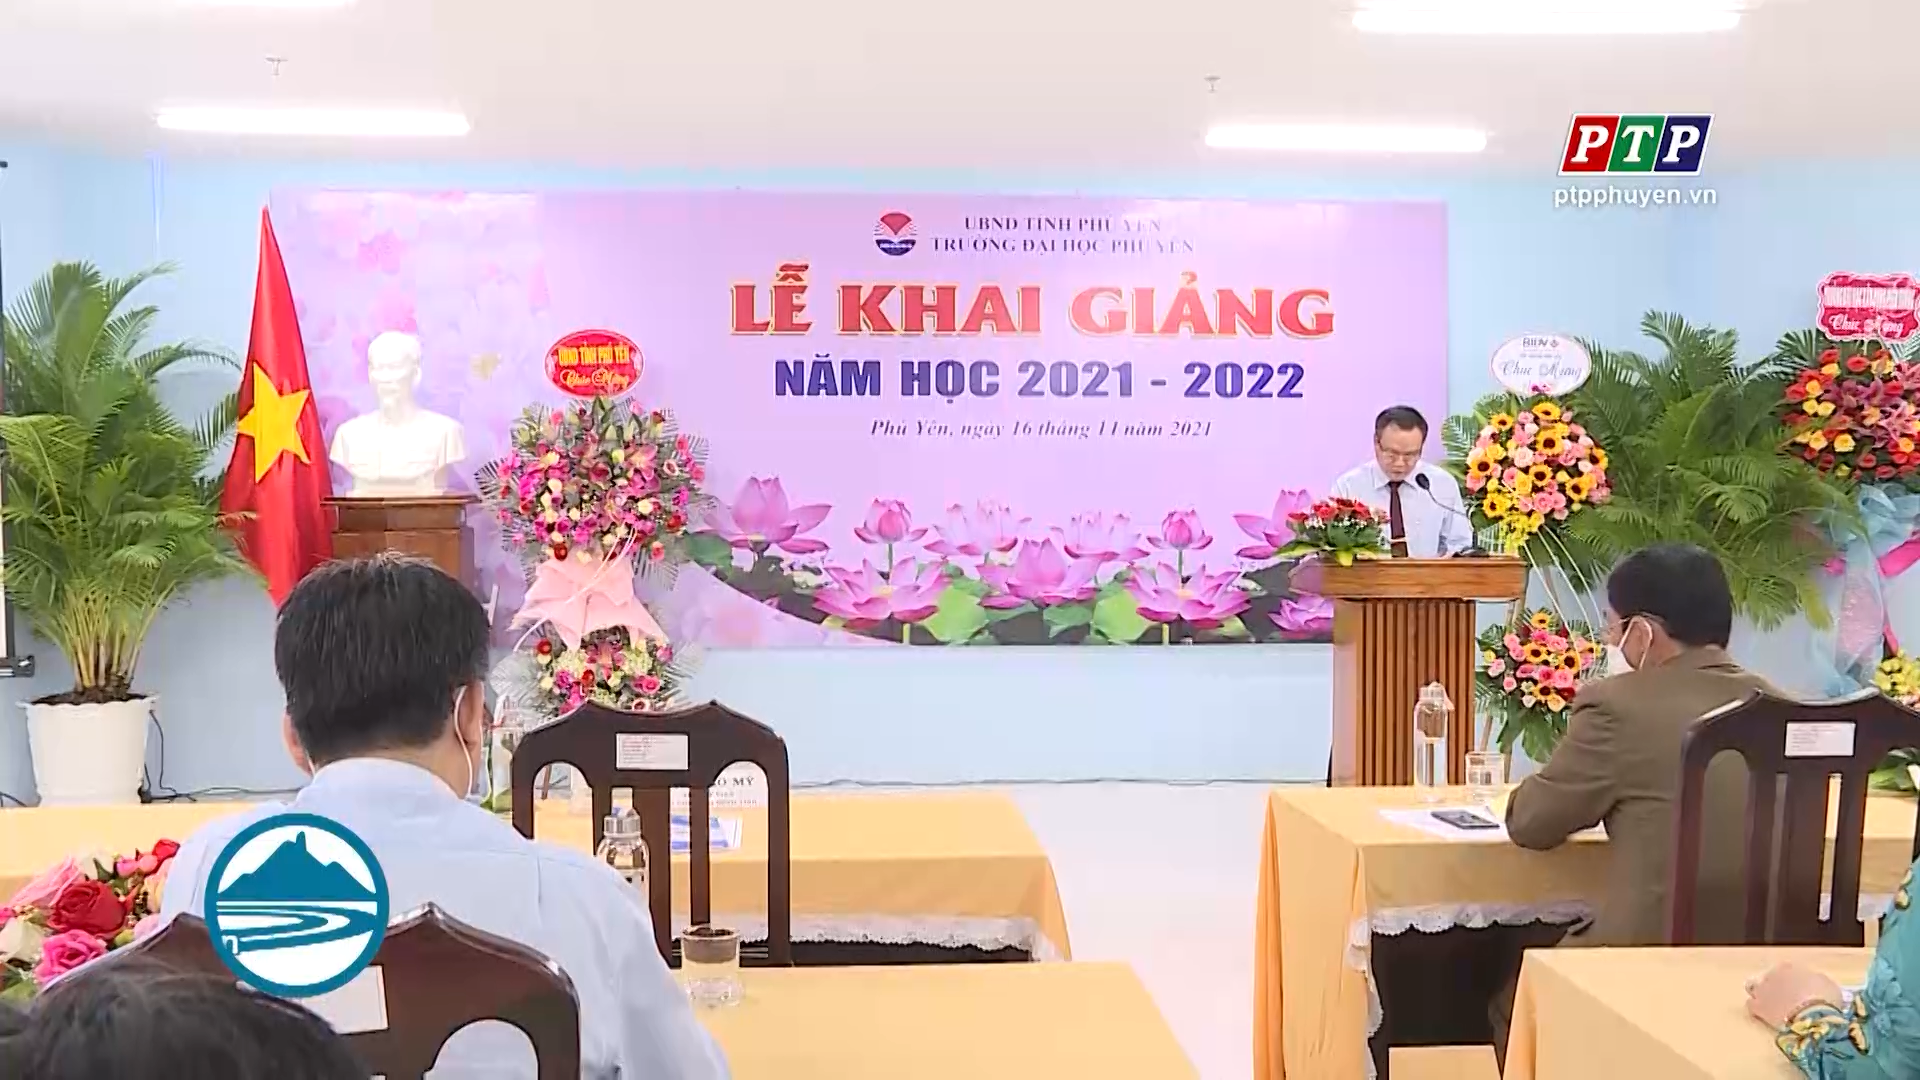 Đại học Phú Yên khai giảng năm học 2021-2022